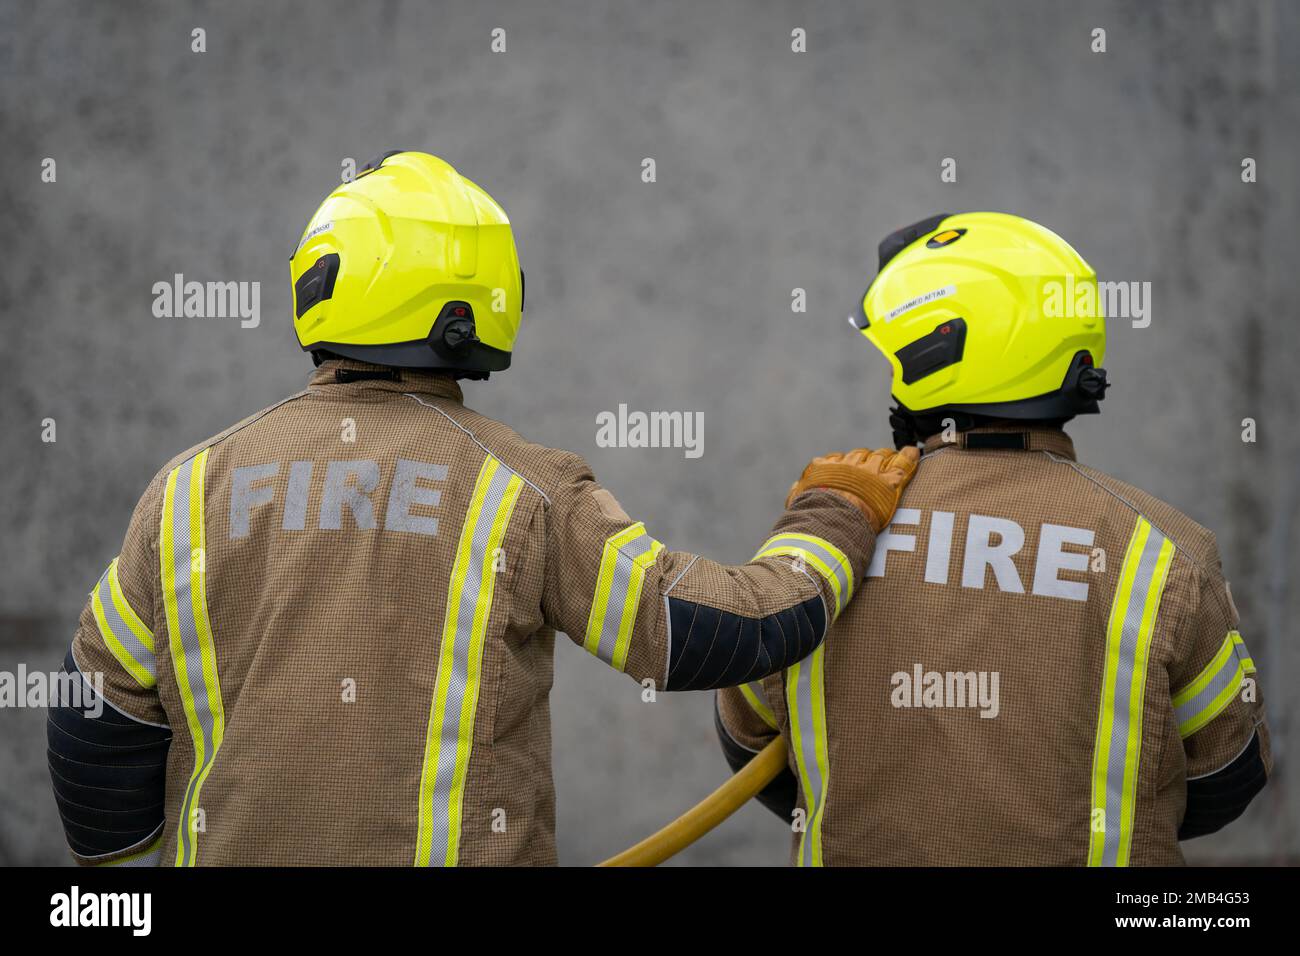 Foto del file datata 21/07/22 delle reclute dei Vigili del fuoco. I servizi antincendio e di soccorso dell'Inghilterra devono essere riformati 'come una questione di urgenza' dopo che soltanto due delle sei raccomandazioni fatte da HIS Majesty's Chief Inspectorate of Constabulary and Fire & Rescue Services (HMICFRS) sono state completate, ha detto il guardiano. In un rapporto annuale sullo stato dei servizi antincendio e di soccorso, Andy Cooke, Chief Inspector of Fire & Rescue Services di sua Maestà, ha dichiarato di essere stato 'frustrato' per la mancanza di progressi dall'inizio delle ispezioni nel 2018. Data di emissione: Venerdì 20 gennaio 2023. Foto Stock